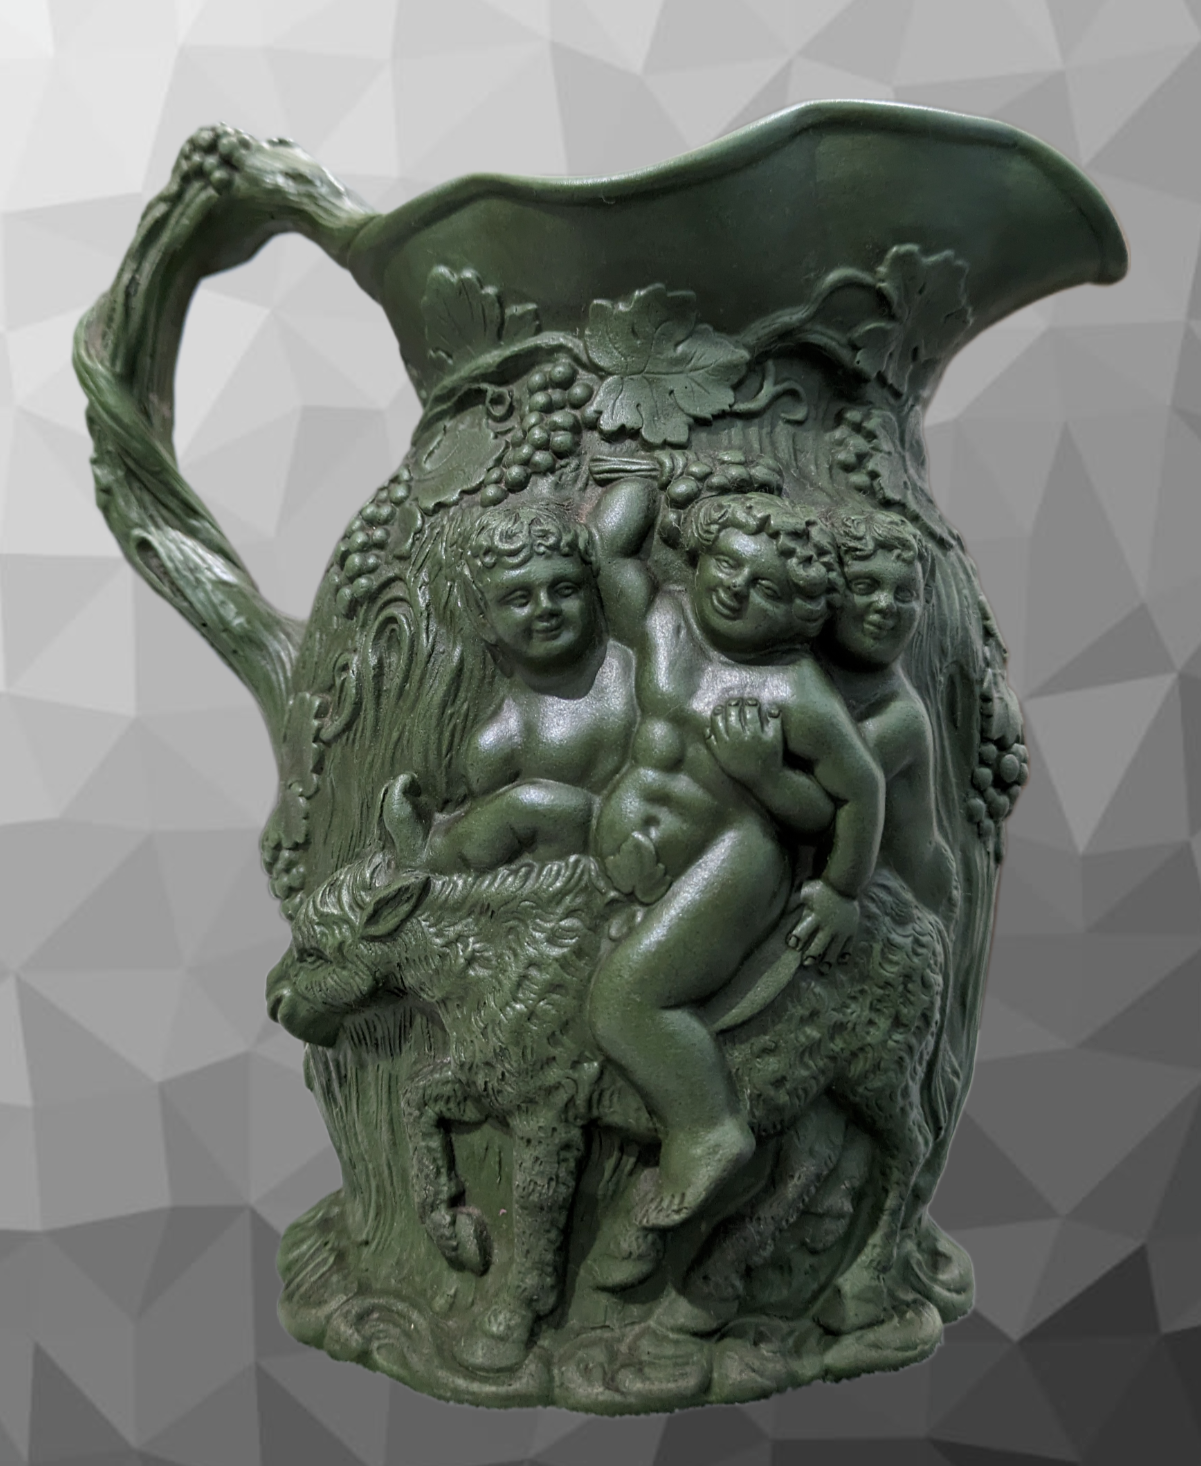 Minton Antique 19th Century Parian Porcelain Bacchus Relief Moulded Pitcher Jug